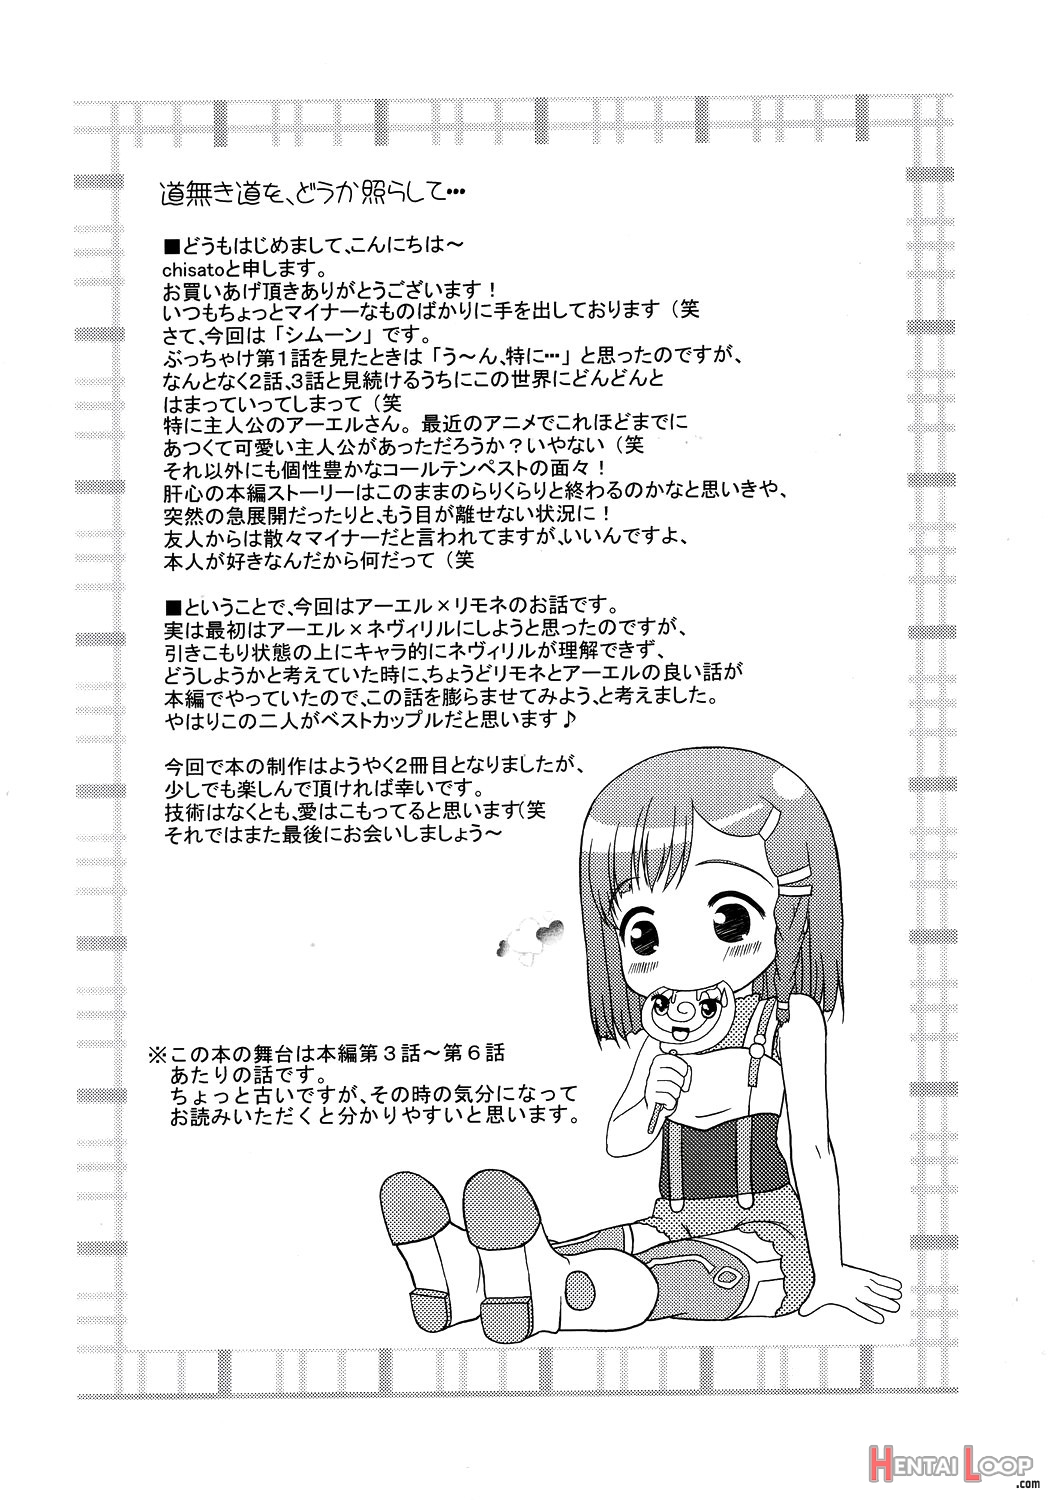 Inori No Uta page 3